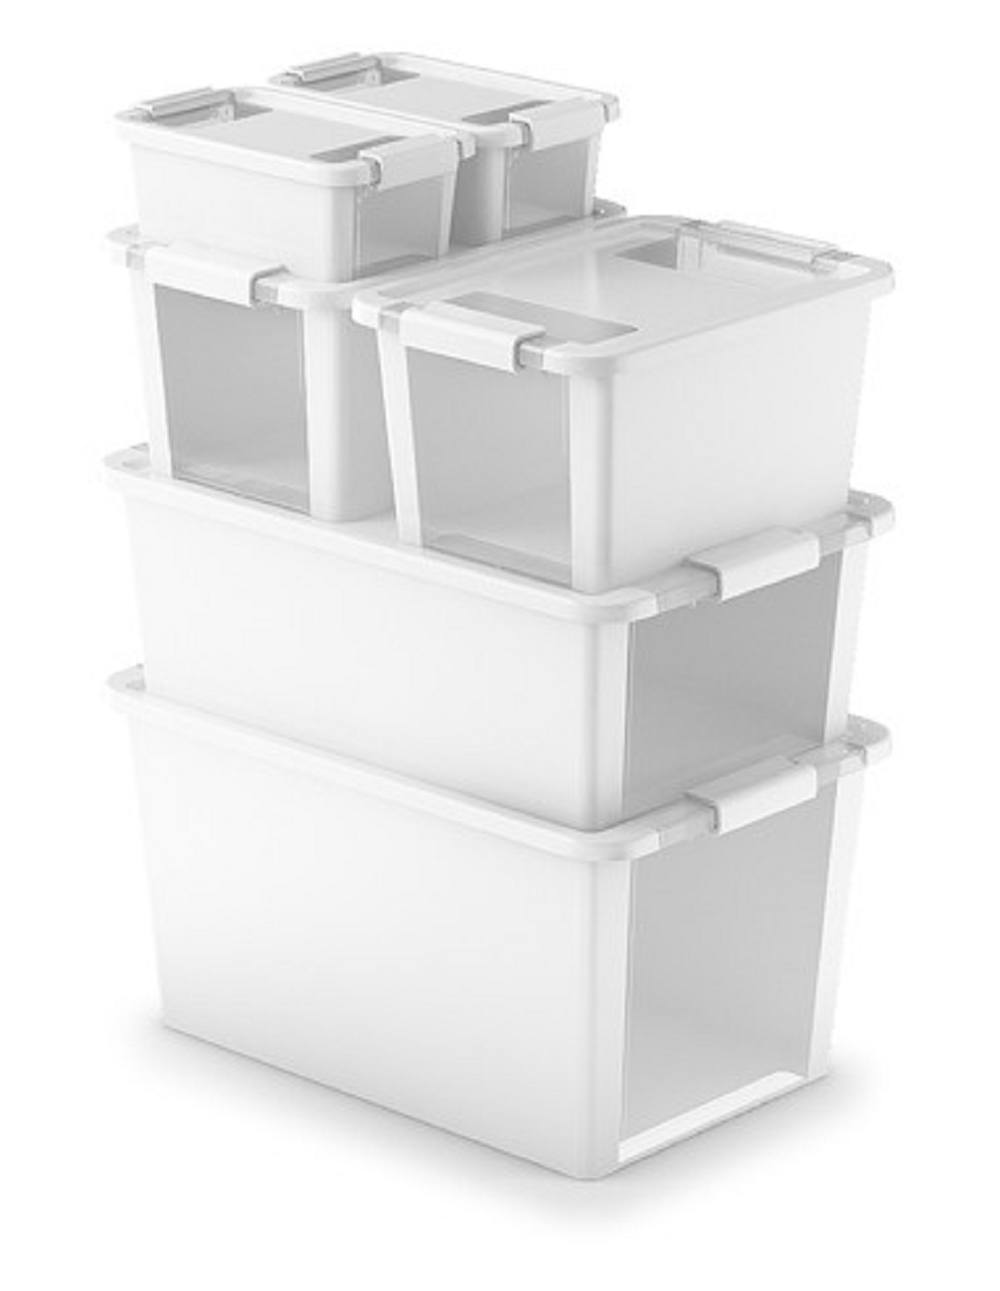 Mehrzweck Aufbewahrungsbehälter STORAGE mit Deckel | HxBxT 28x55x35cm | 40 Liter | Grün | Behälter, Box, Aufbewahrungsbehälter, Aufbewahrungsbox